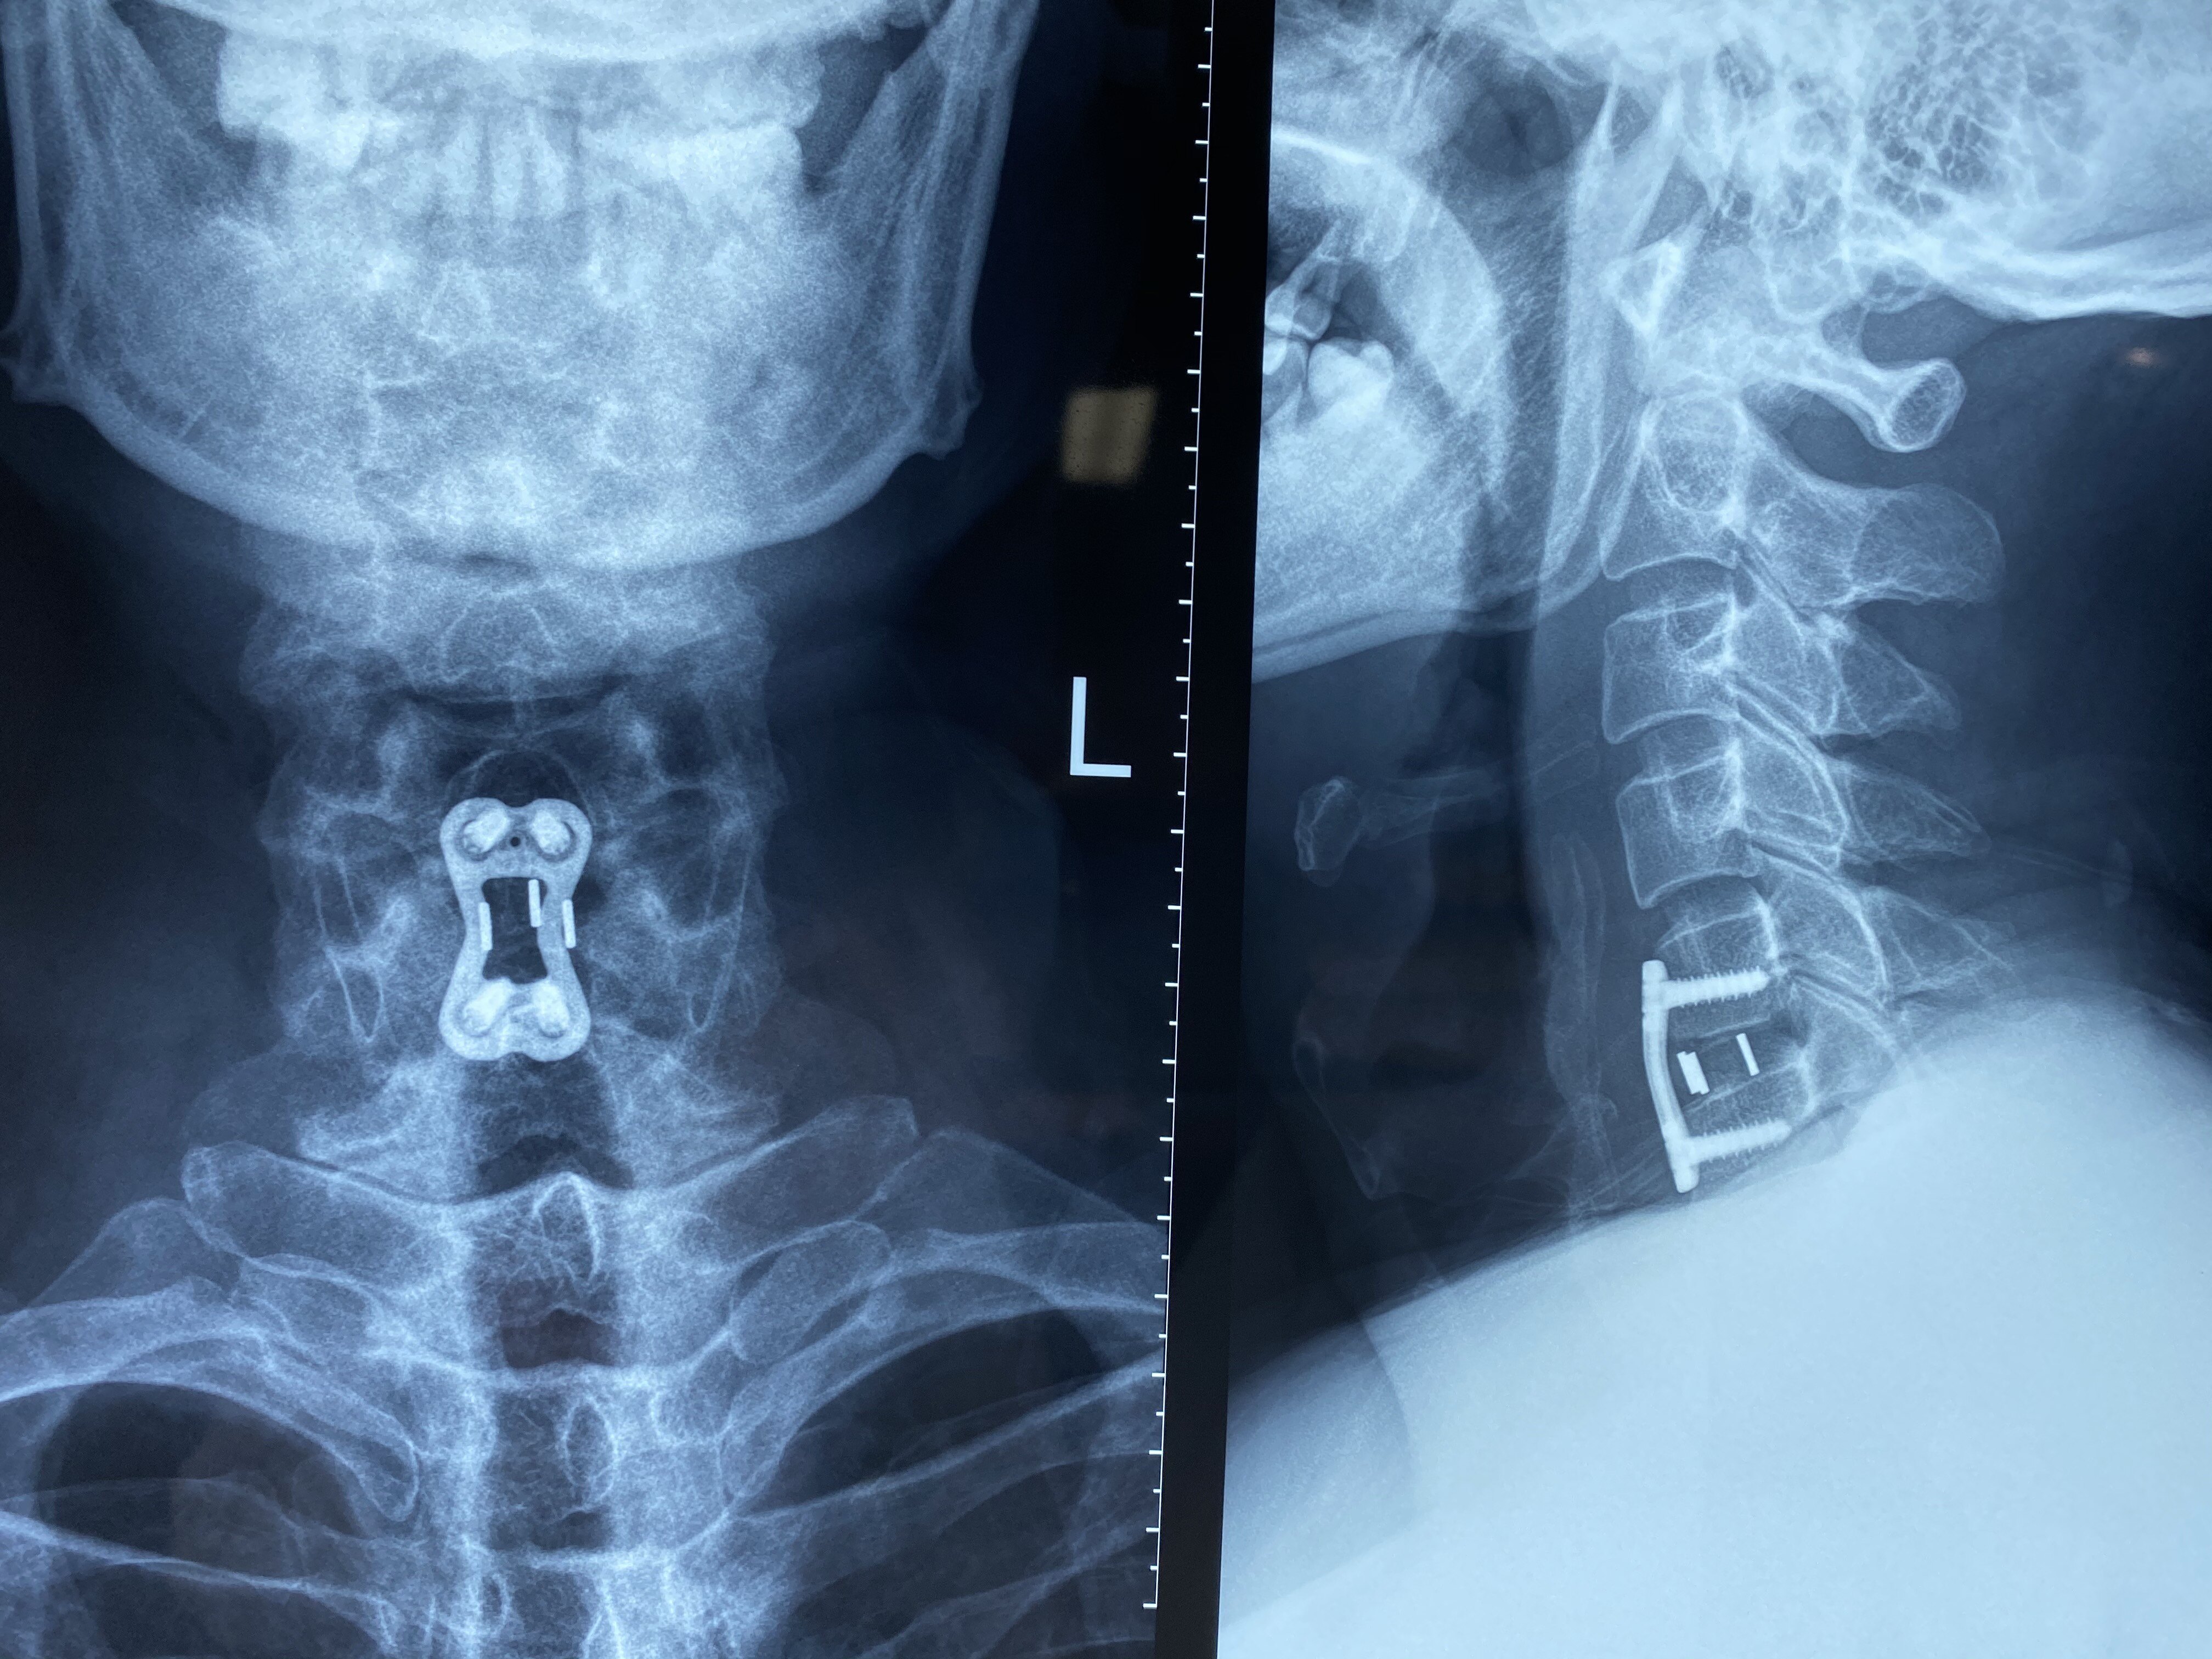 车祸导致的颈椎脊髓损伤的手术过程记录分享 - 病例中心(诊疗助手) - 爱爱医医学网